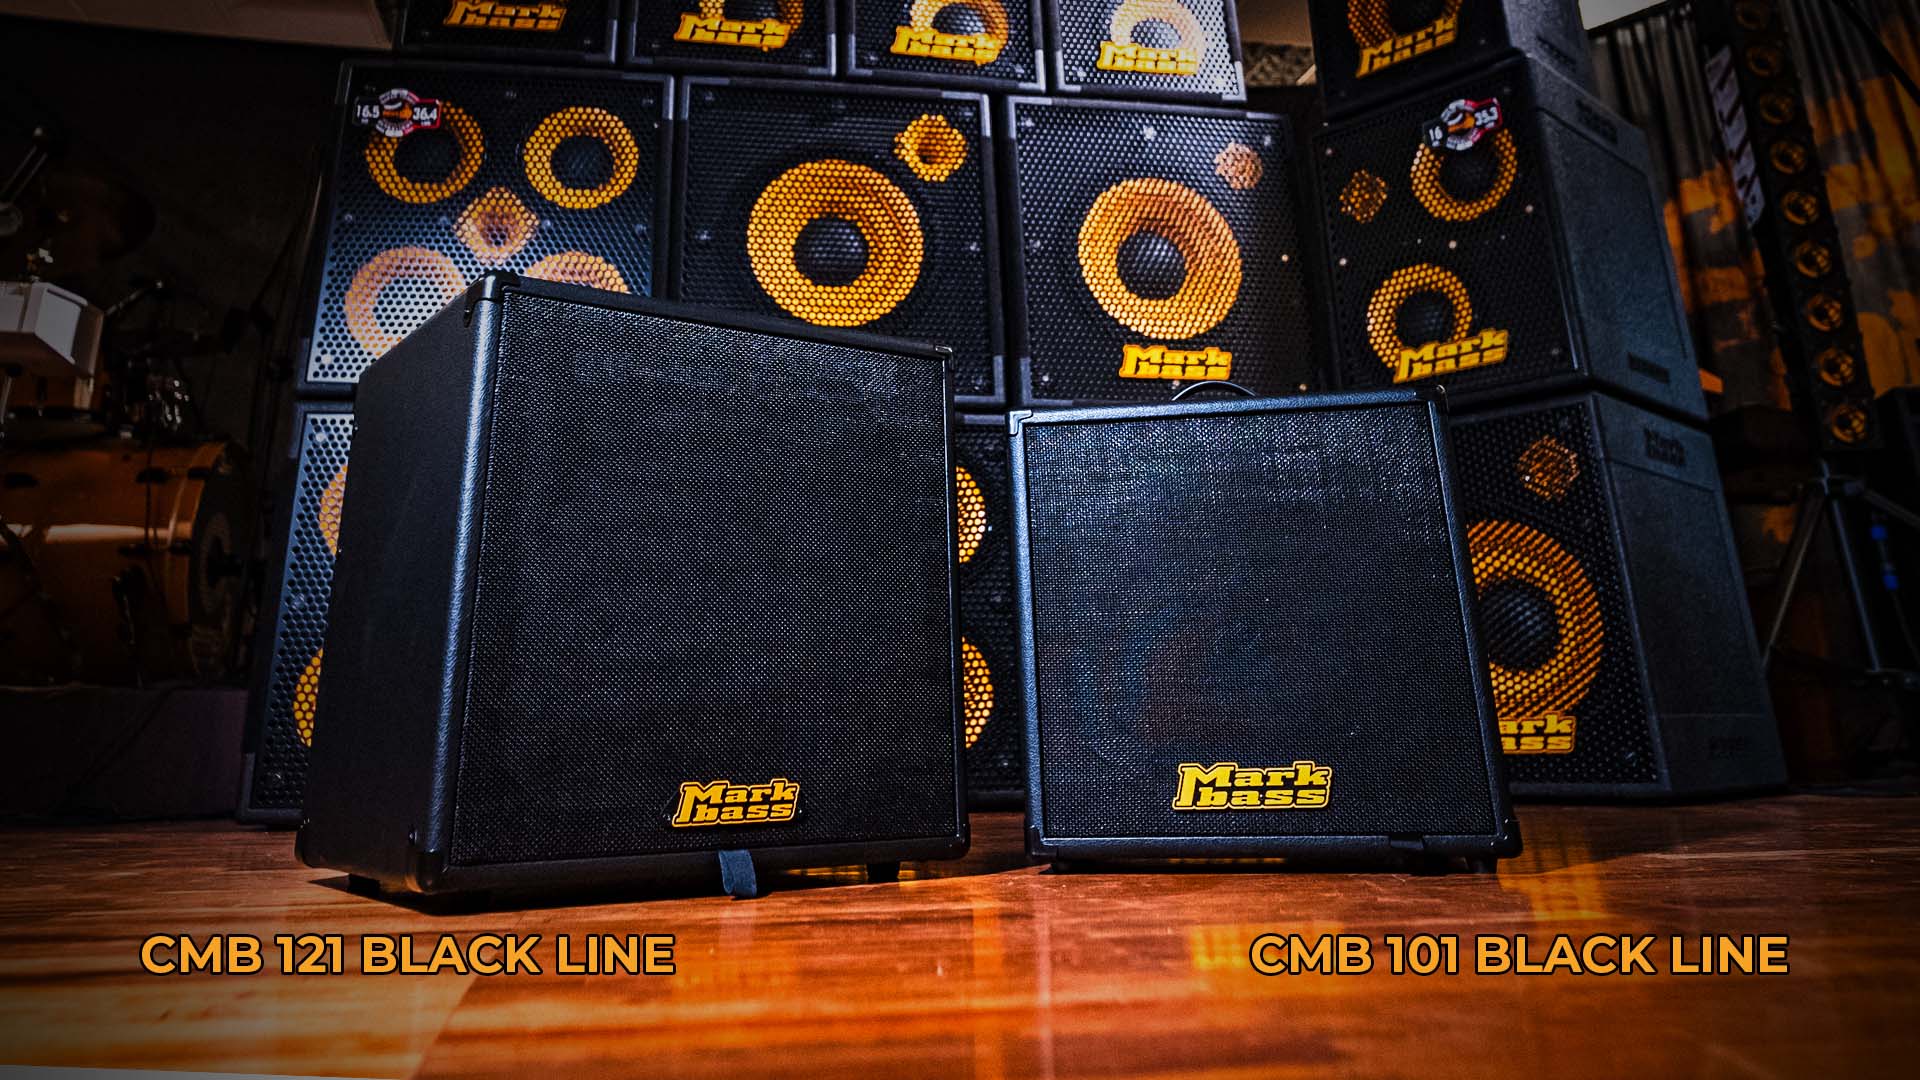 CMB BLACK LINEシリーズ発売のお知らせ - パール楽器製造株式会社｜NEWS u0026 EVENTS